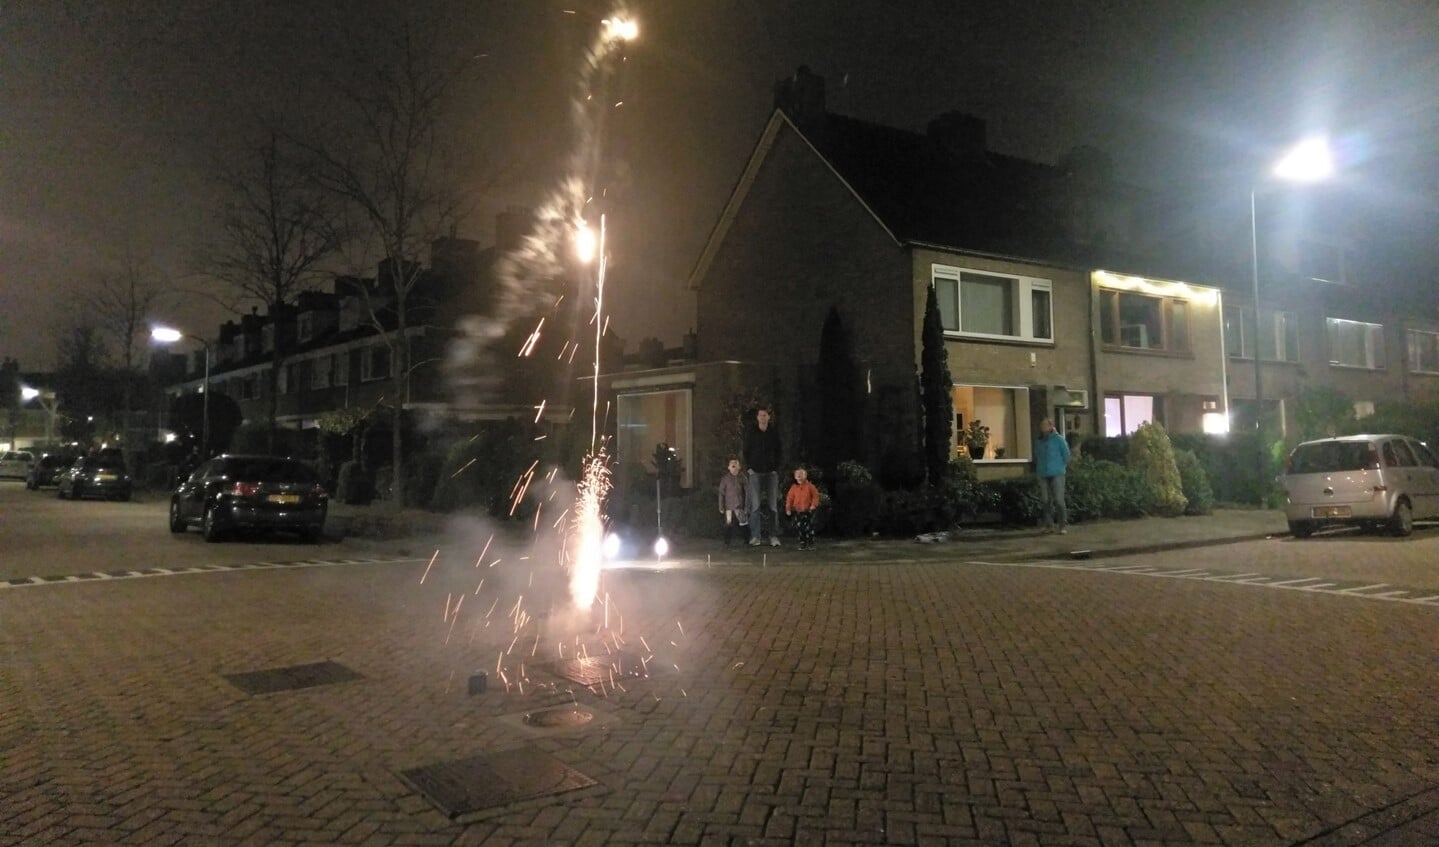 Vuurwerk met de kinderen afsteken in Prinsenhof laag in Leidschendam (ingezonden foto).